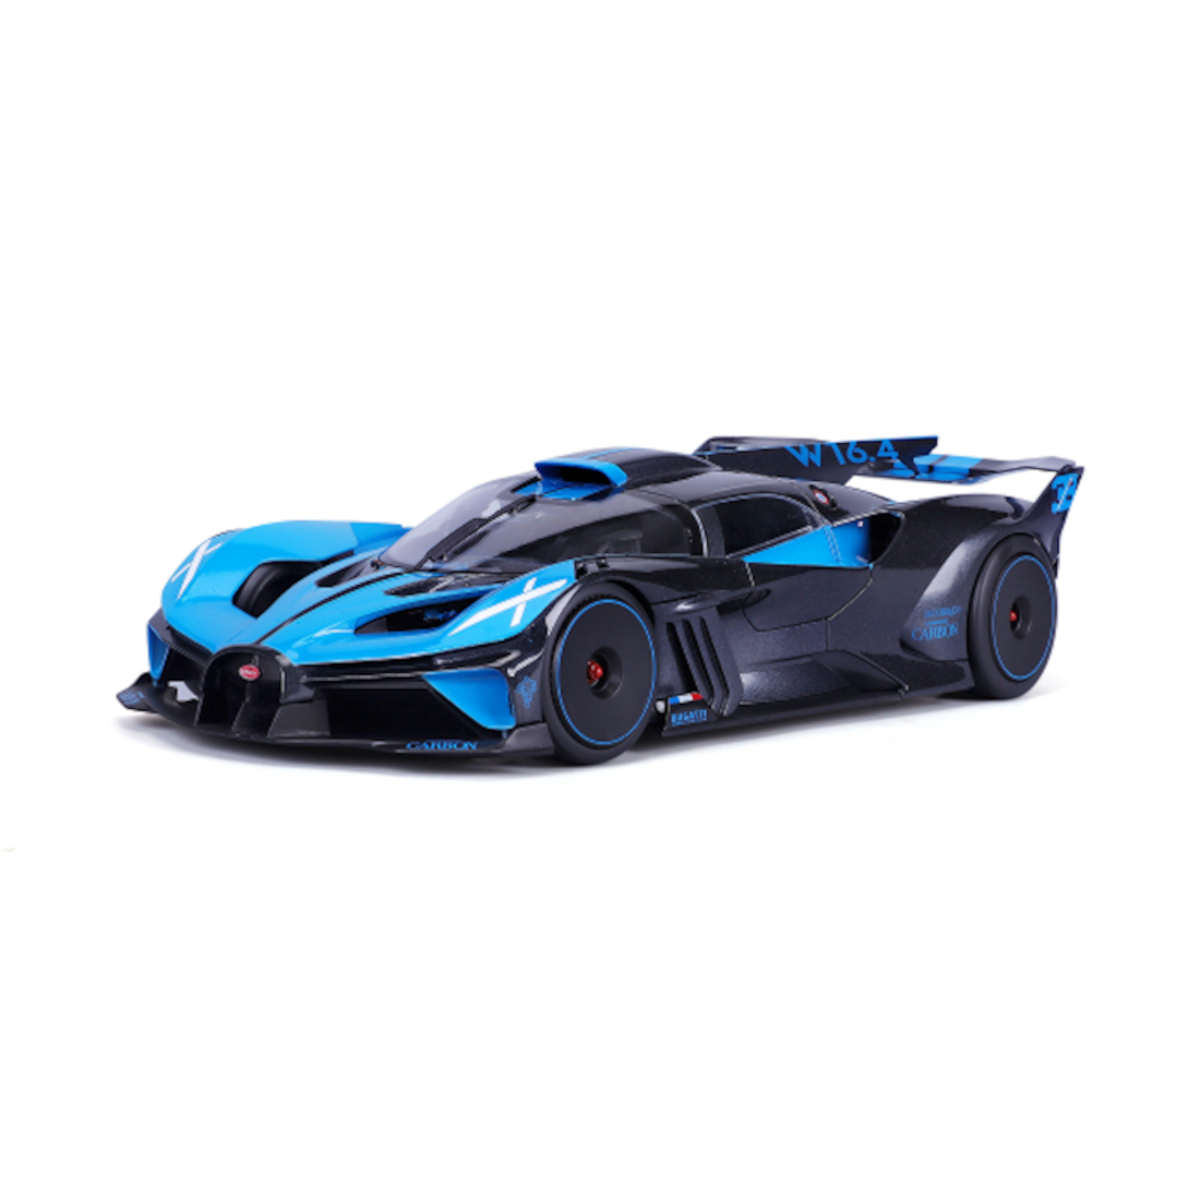 18-38306 Maßstab Bolide BBURAGO Spielzeugauto - (blau, 1:43) Modellauto - Bugatti